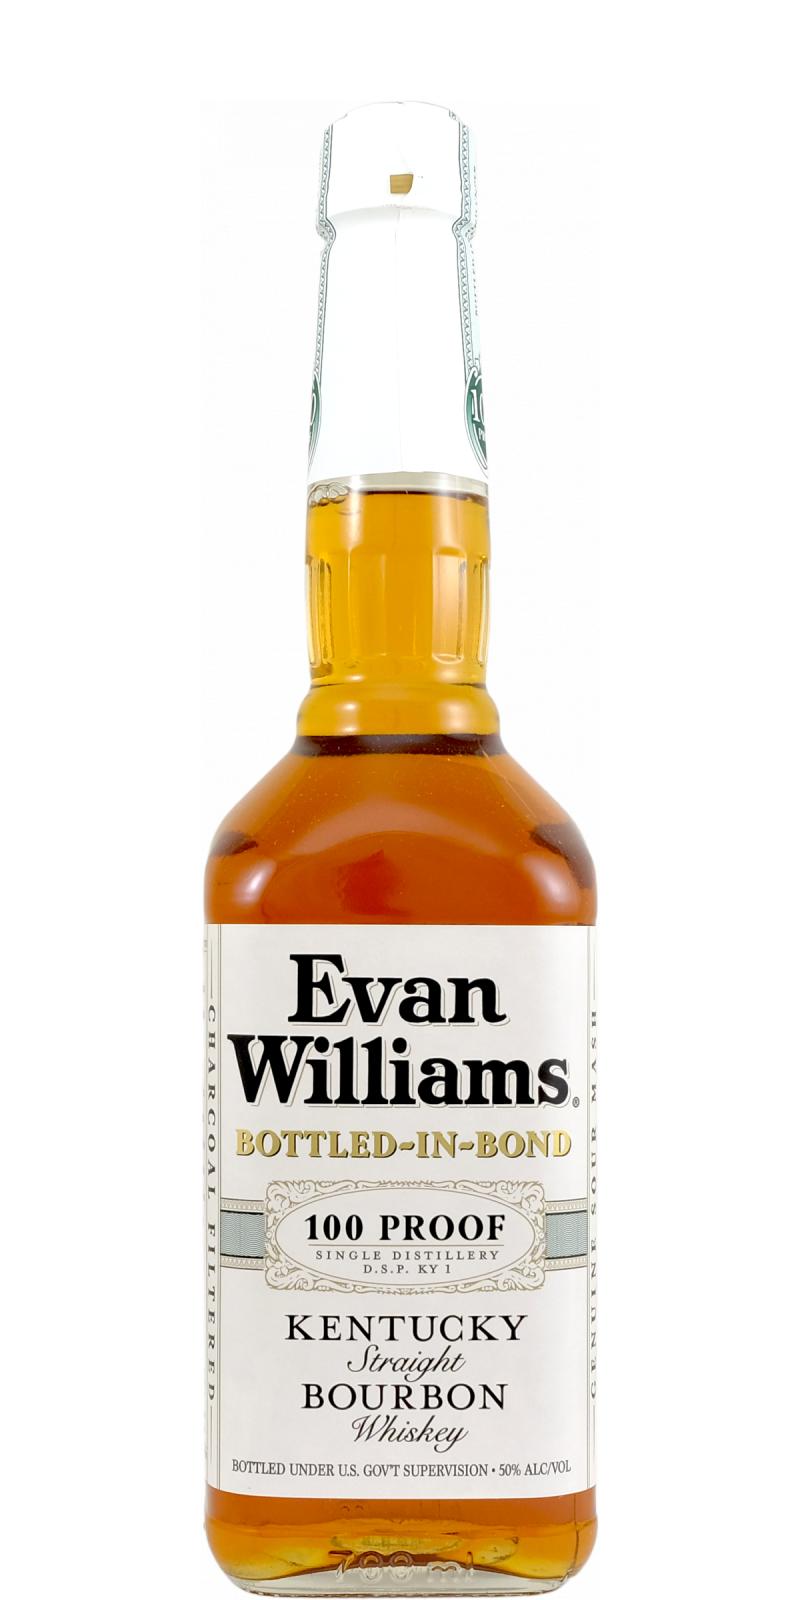 Evan Williams Bottled-In-Bond